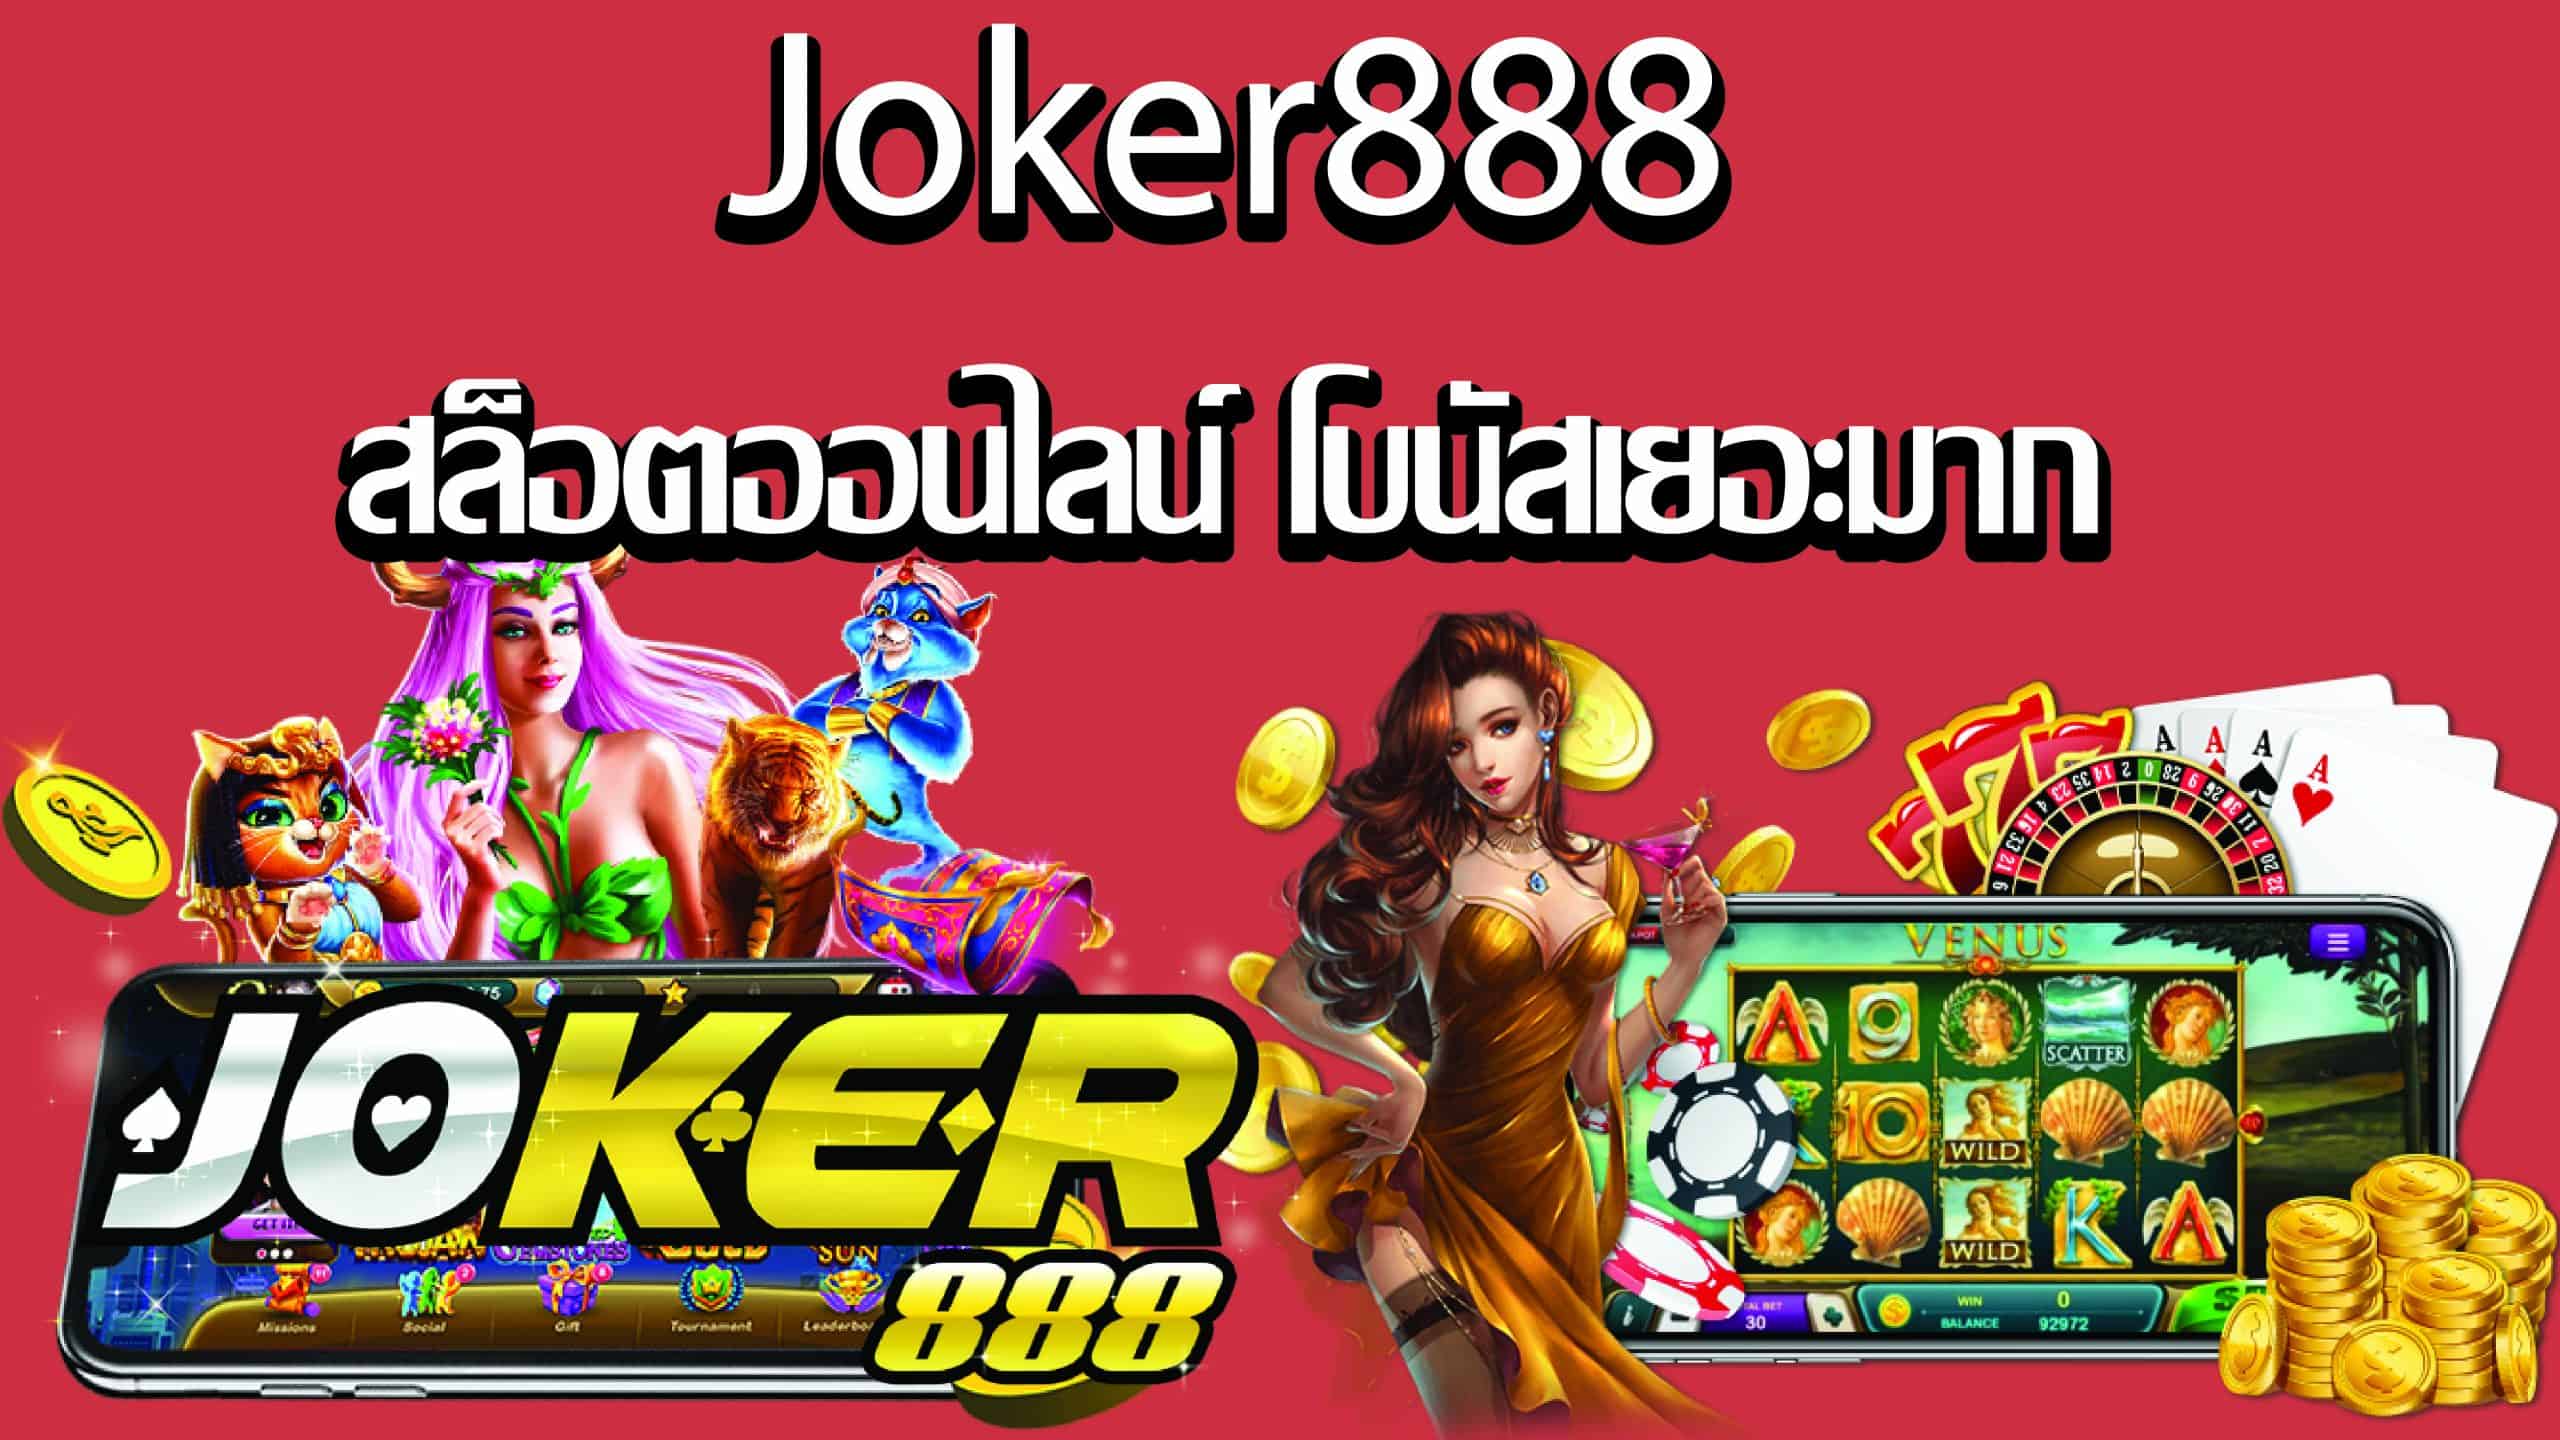 เล่นไม่เป็นเราช่วยได้ กับเกมสล็อตออนไลน์ Joker888.jpg